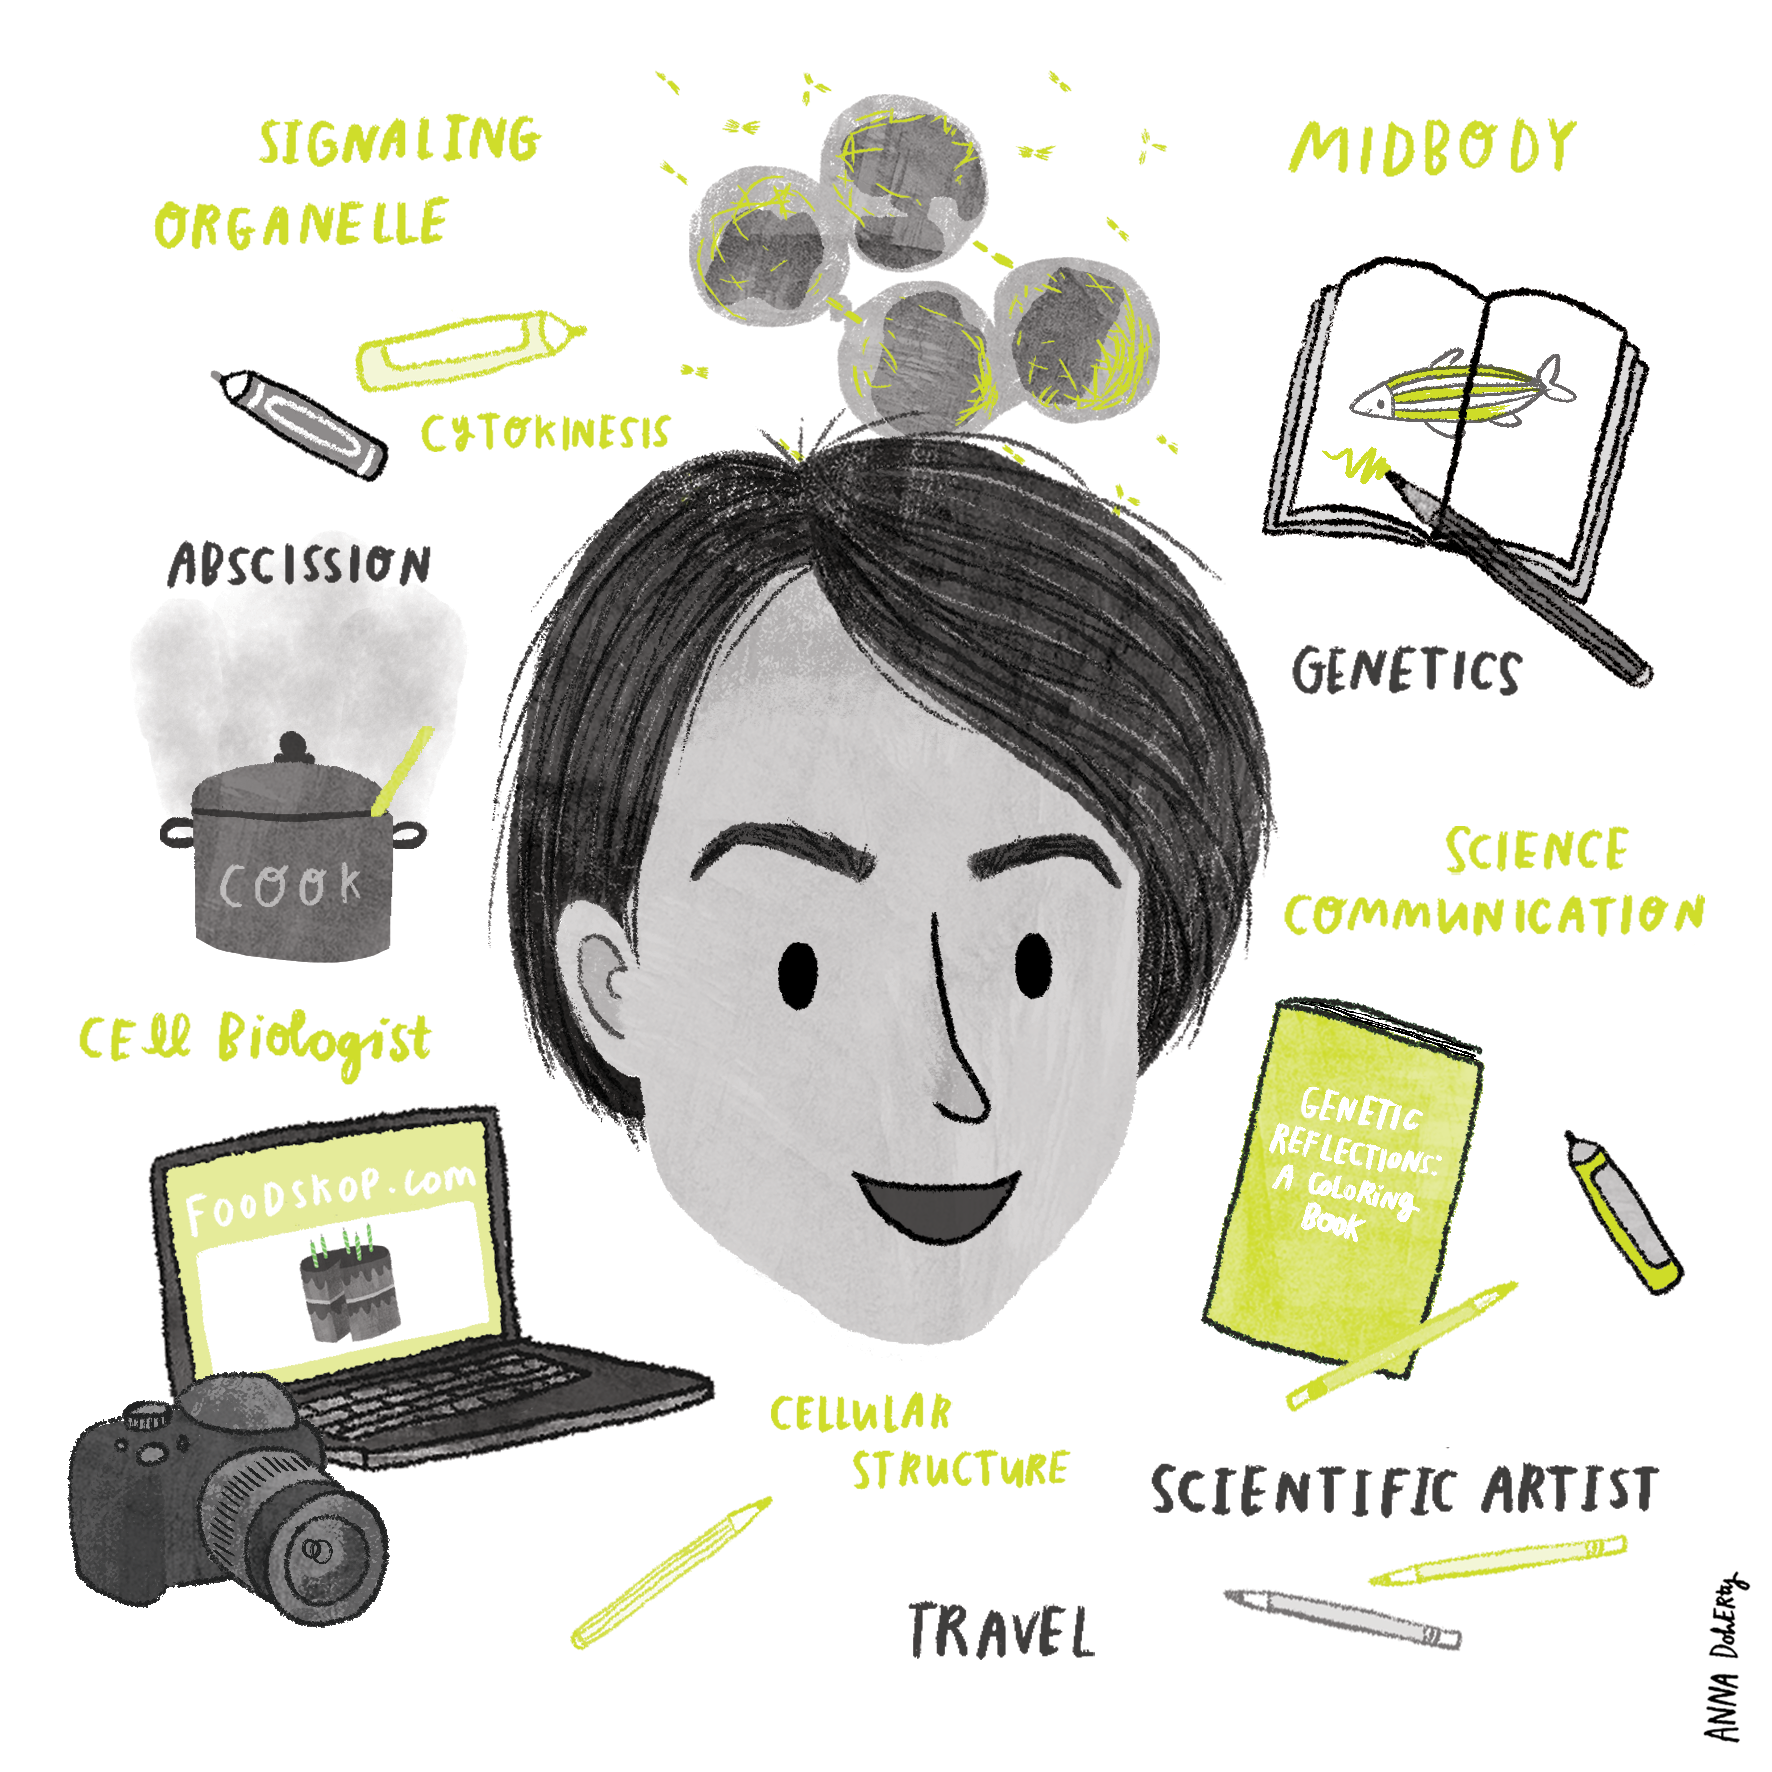 An Illustration of Dr Ahna Skop